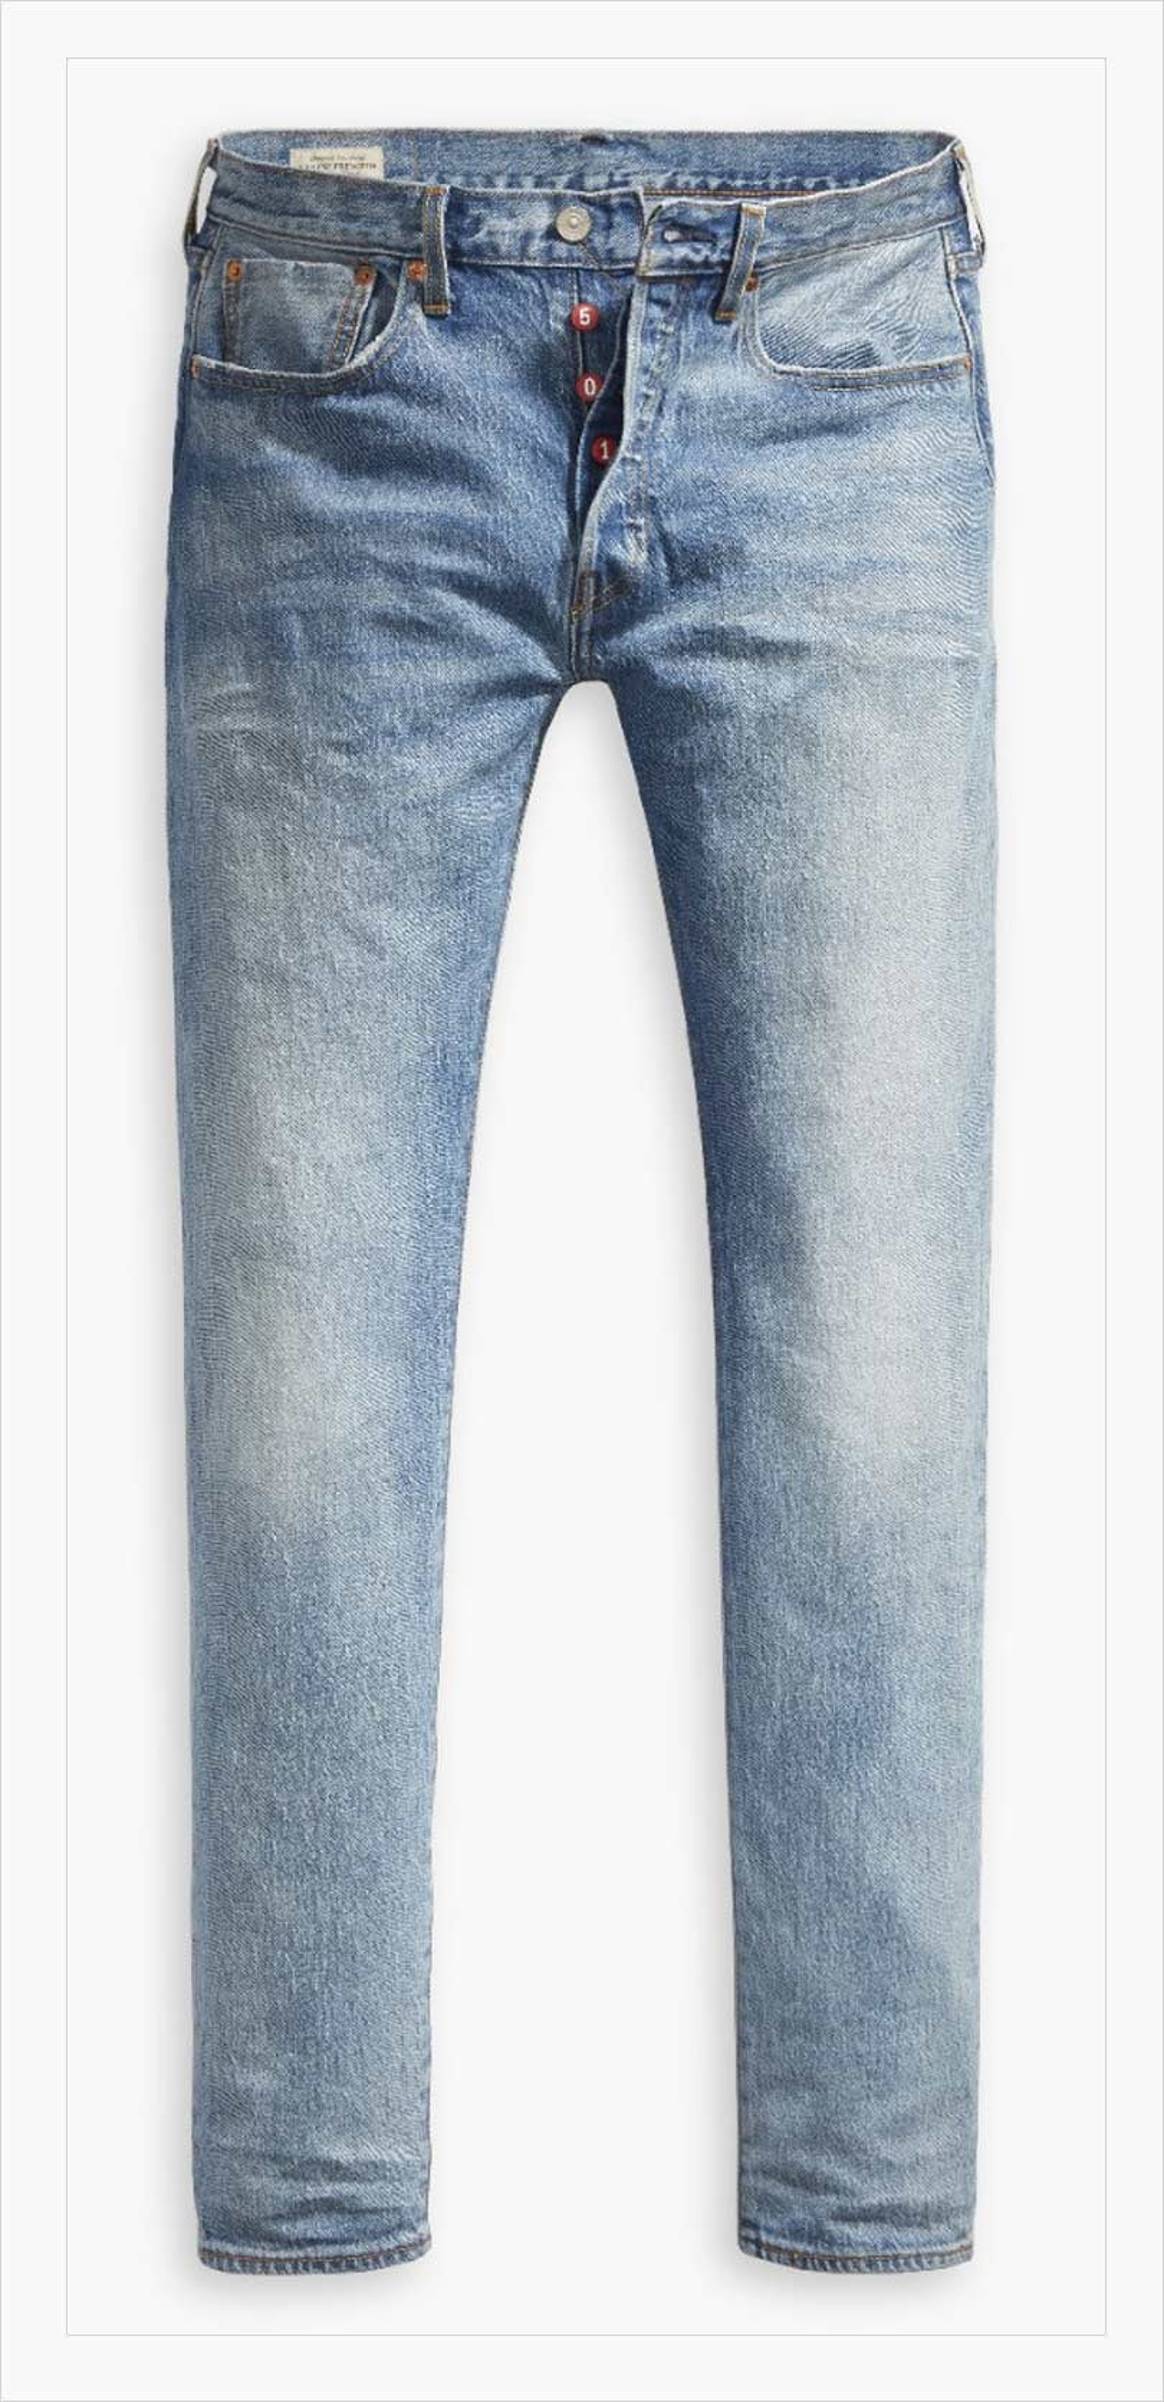 Les neufs modèles de jeans les plus vendus au monde